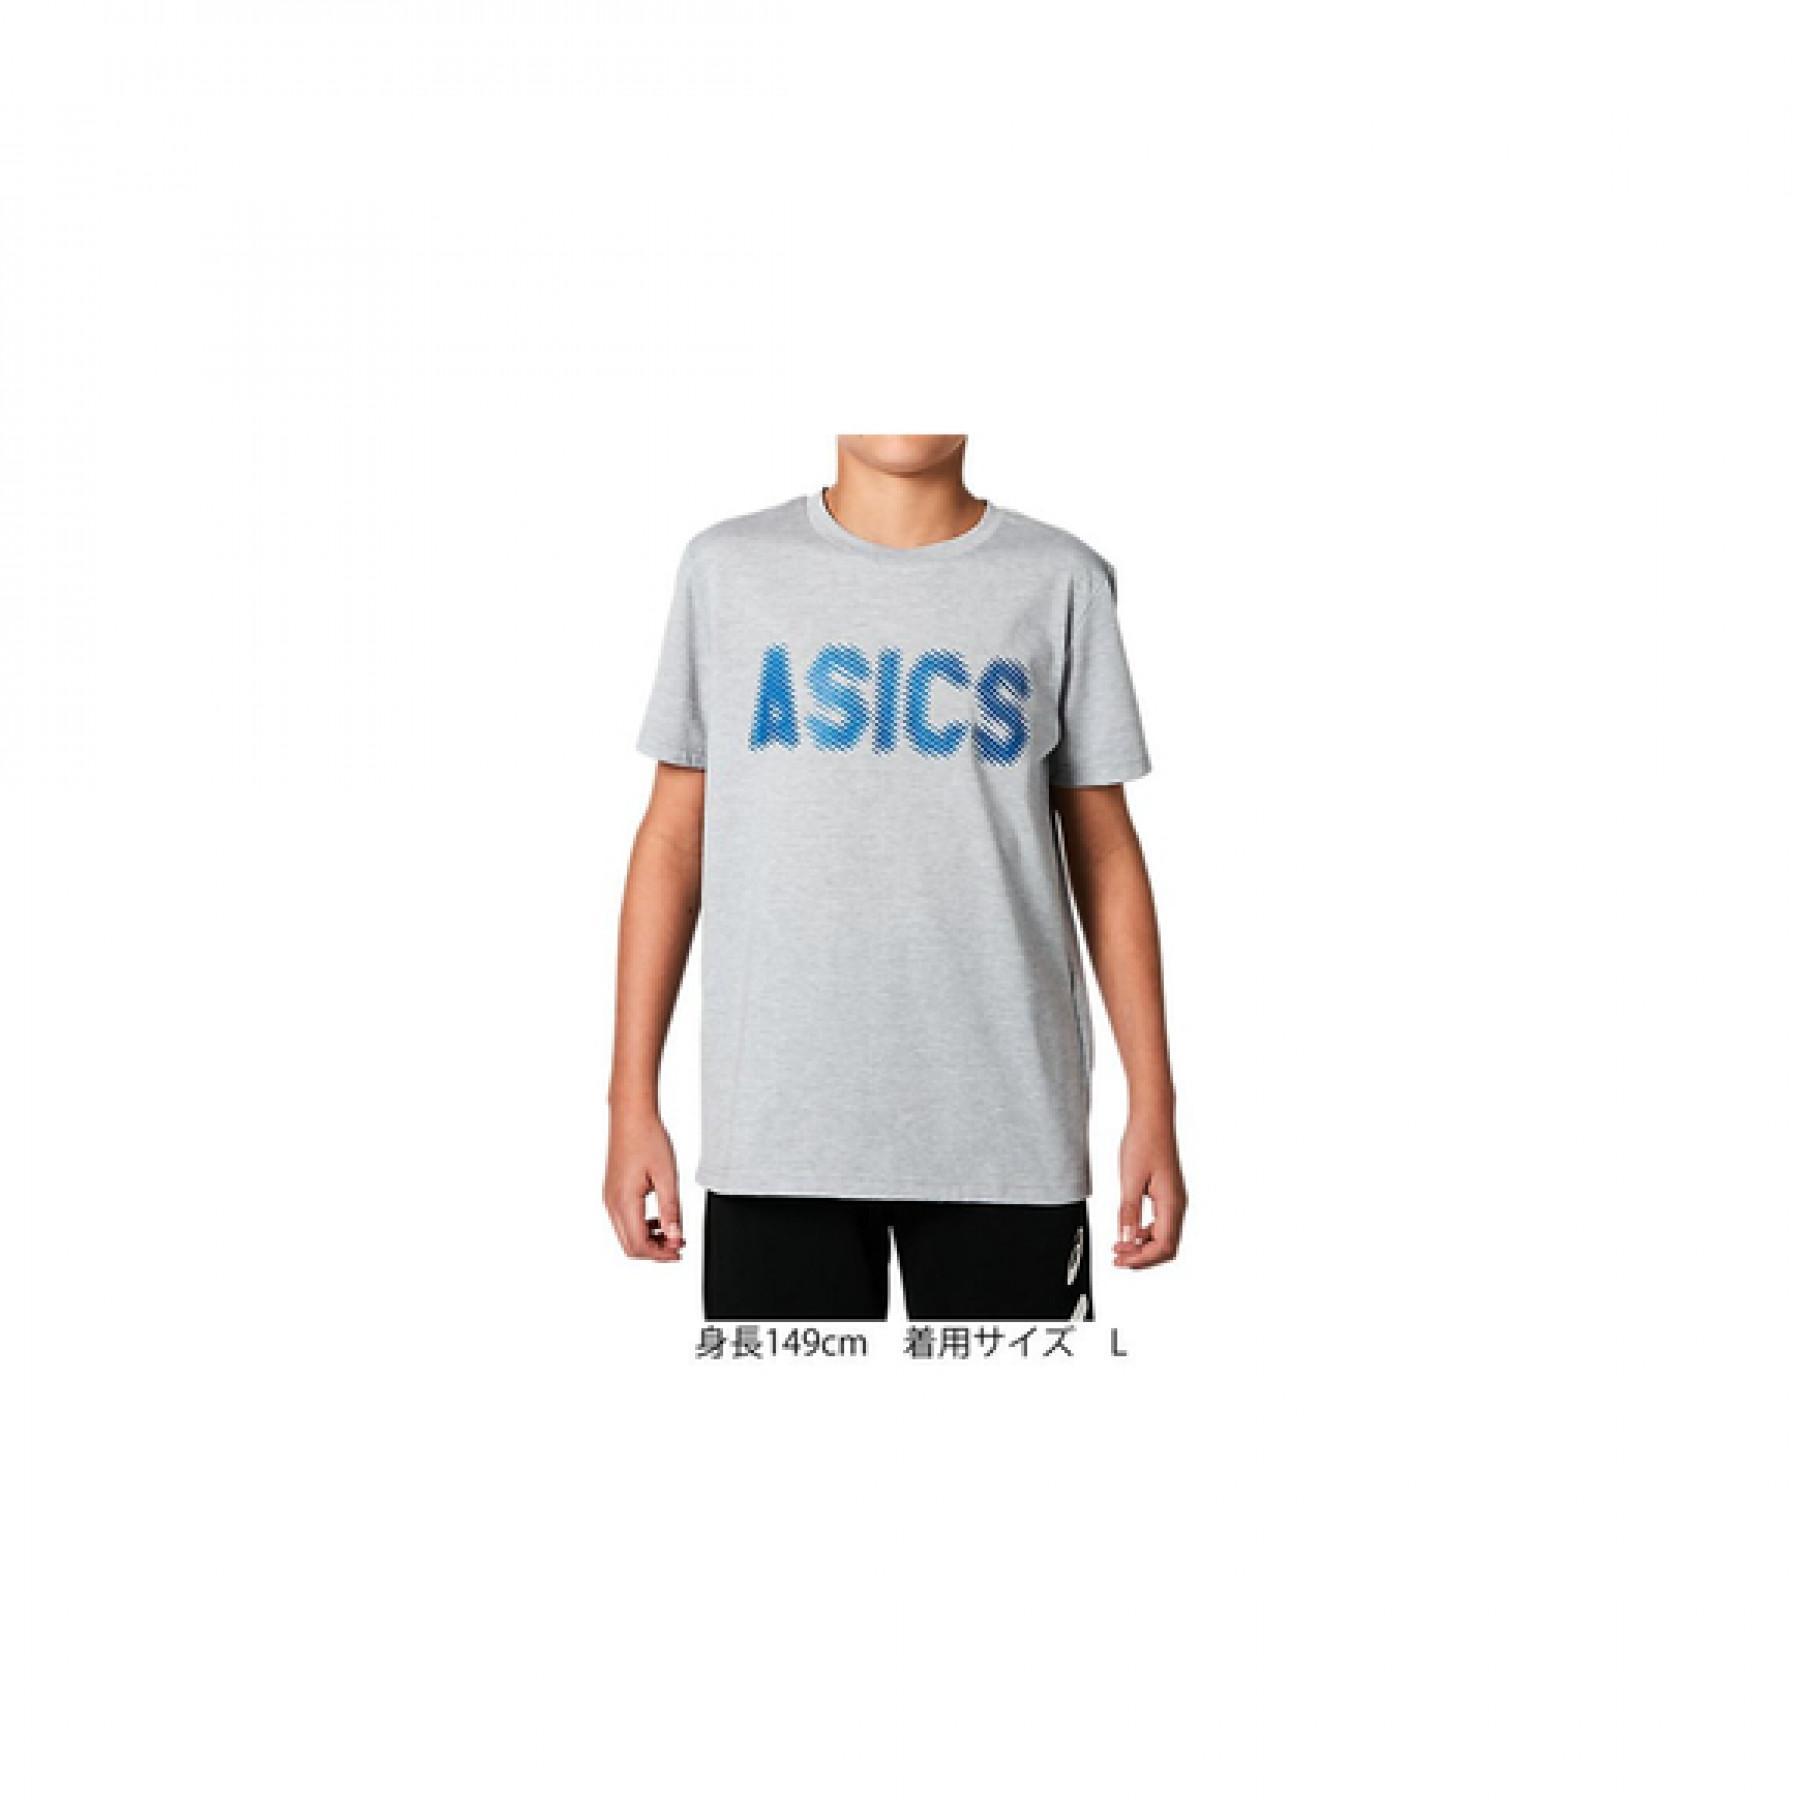 Camiseta para niños Asics Gpxt